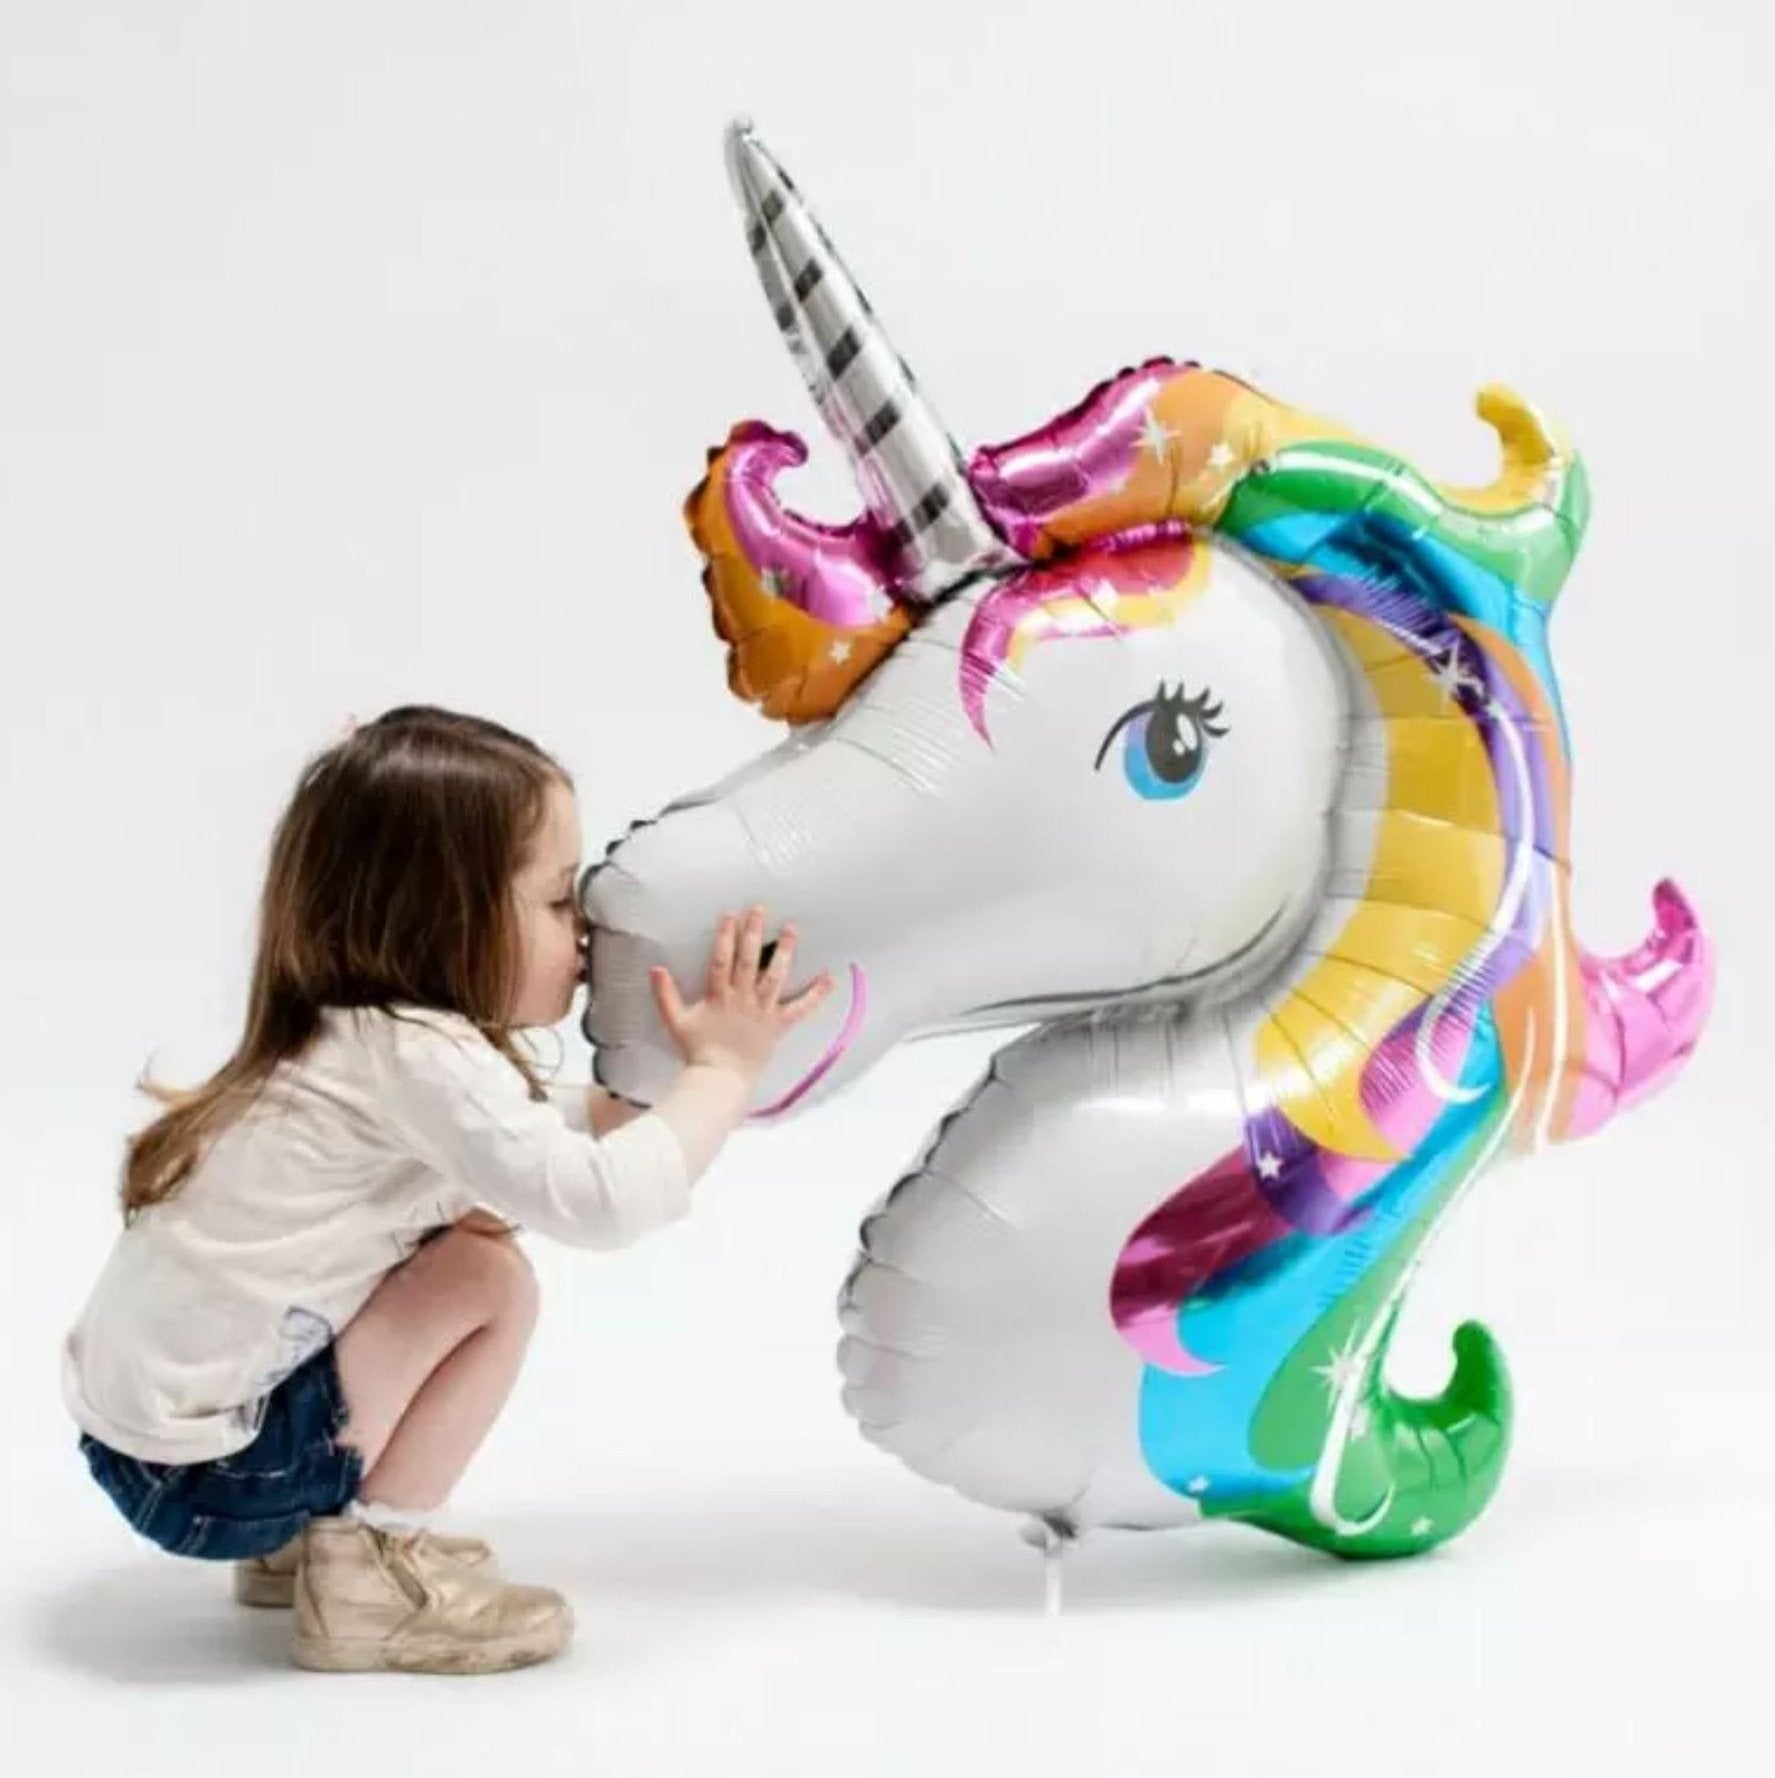 Jumbo Super Shape Rainbow Unicorn Head Foil Balloon - Online Party Supplies